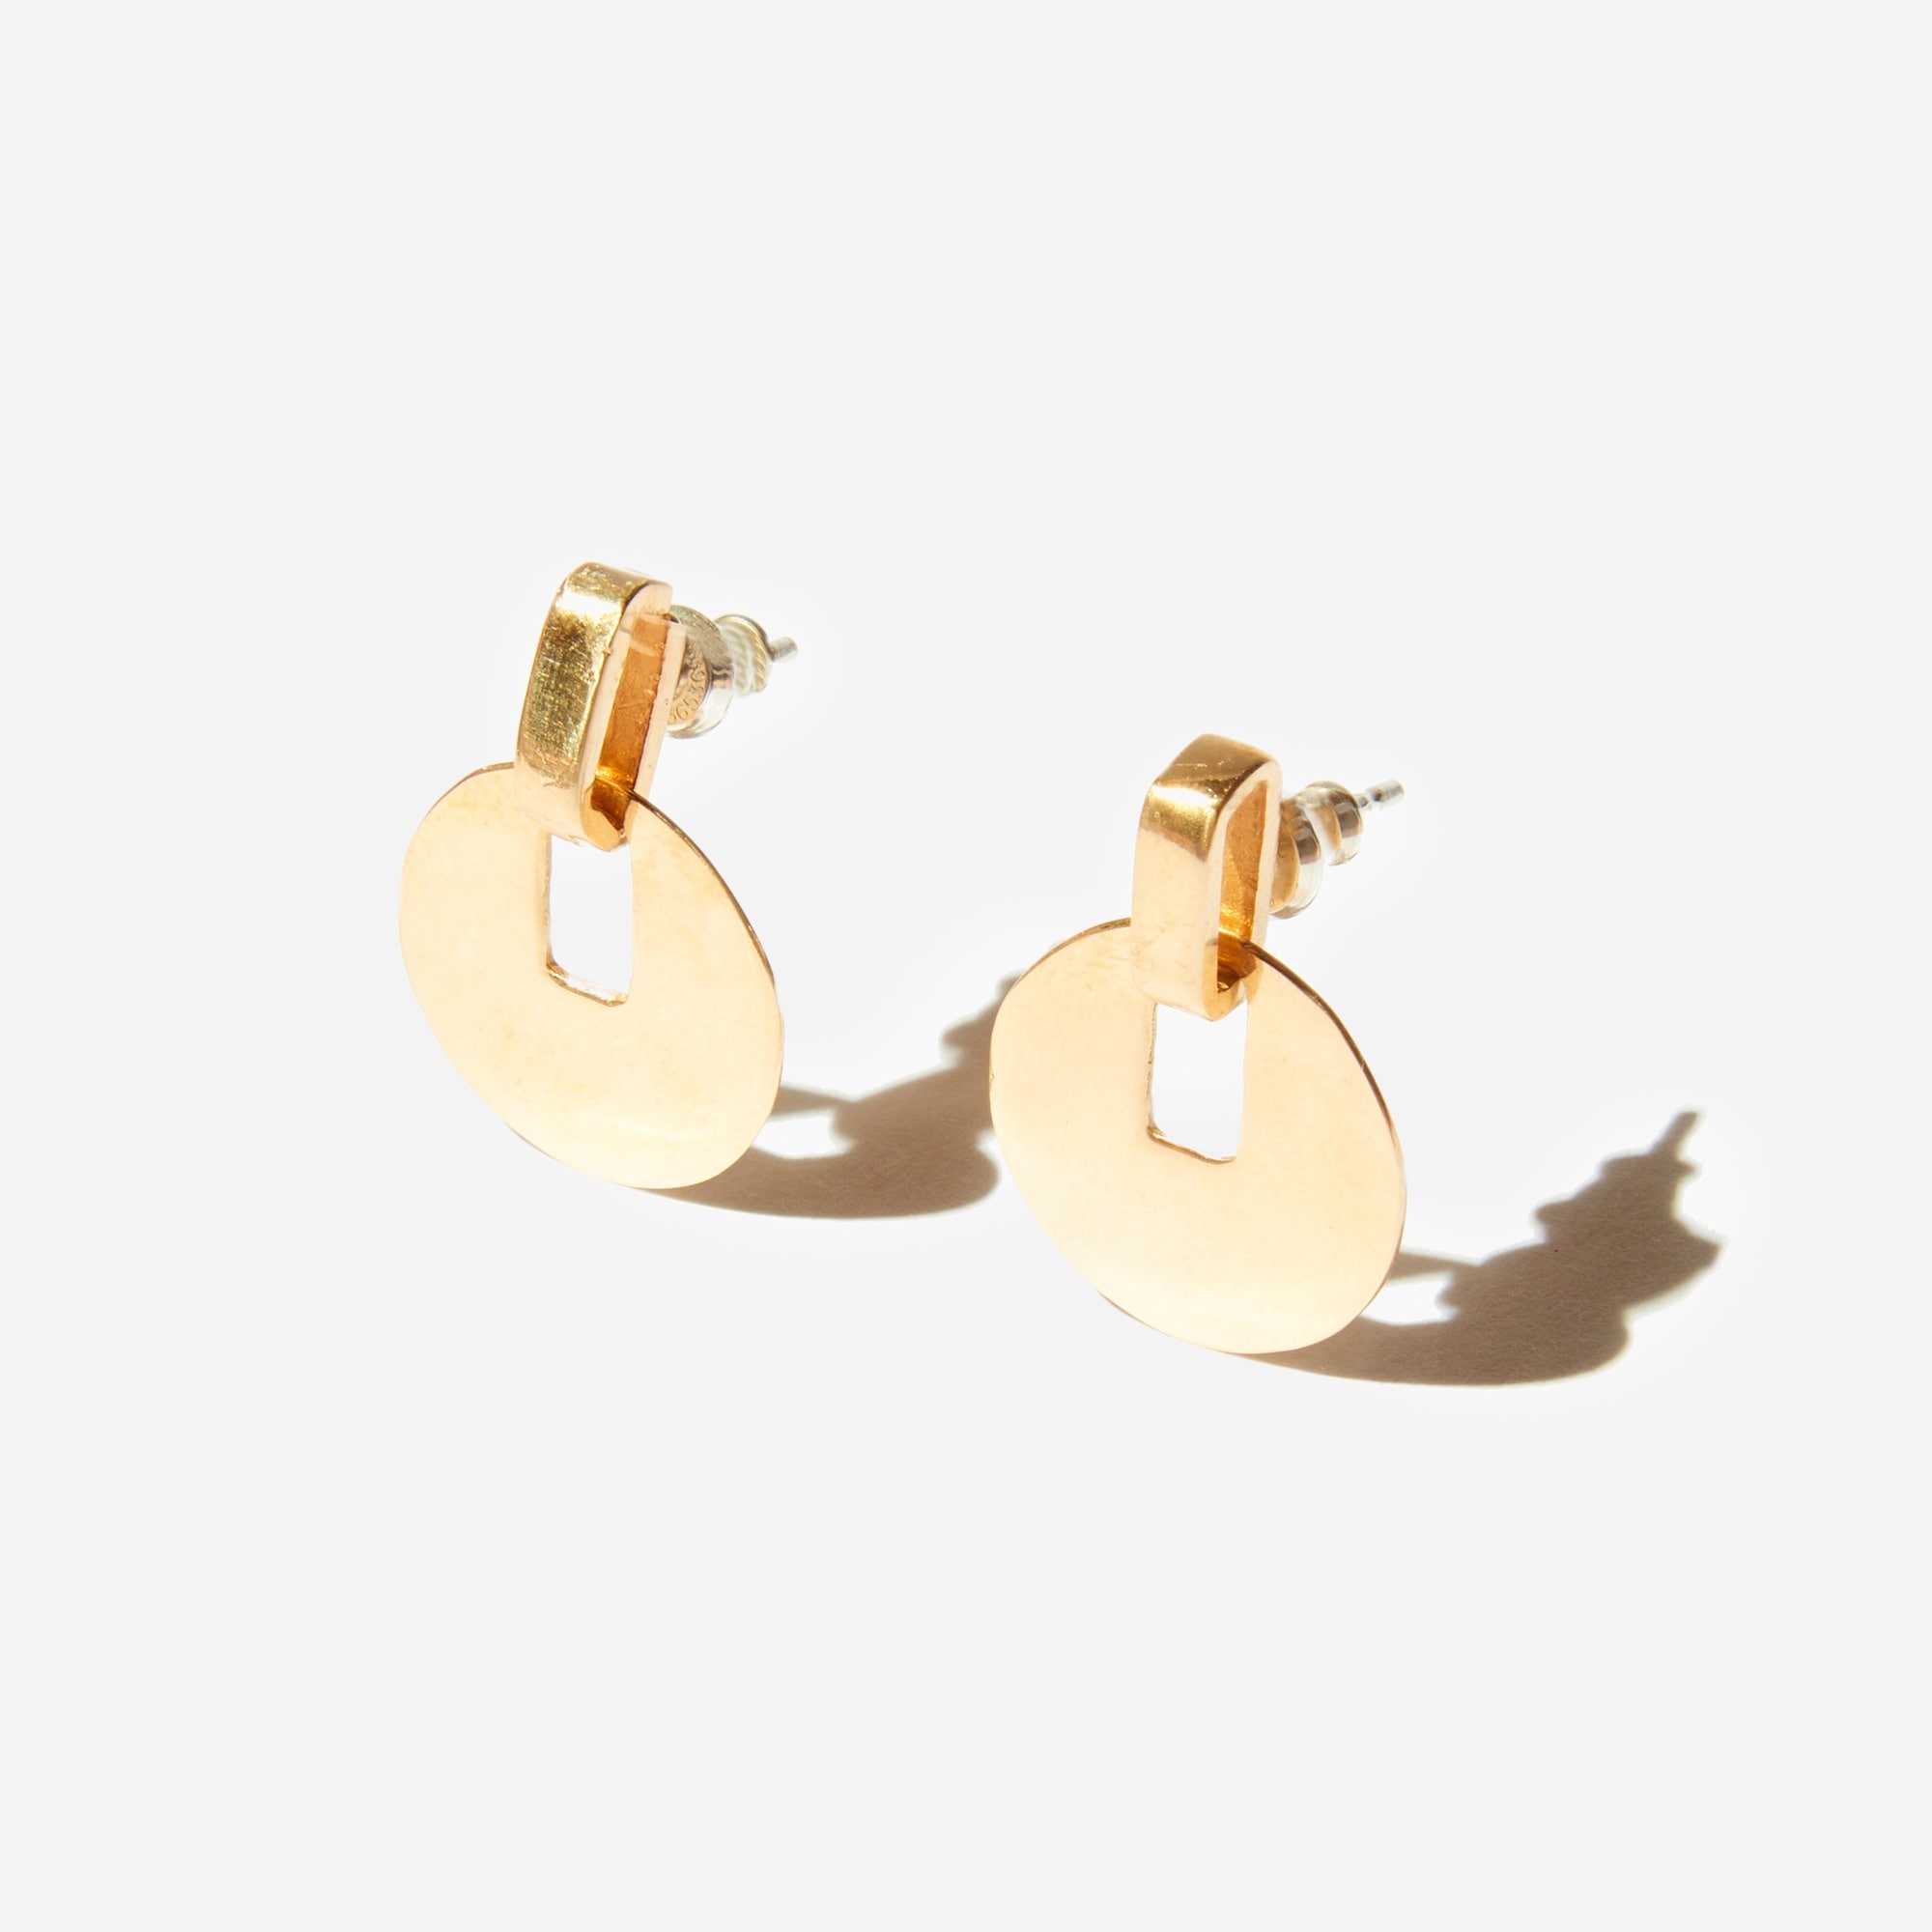  Odette New York®  Paillette earrings